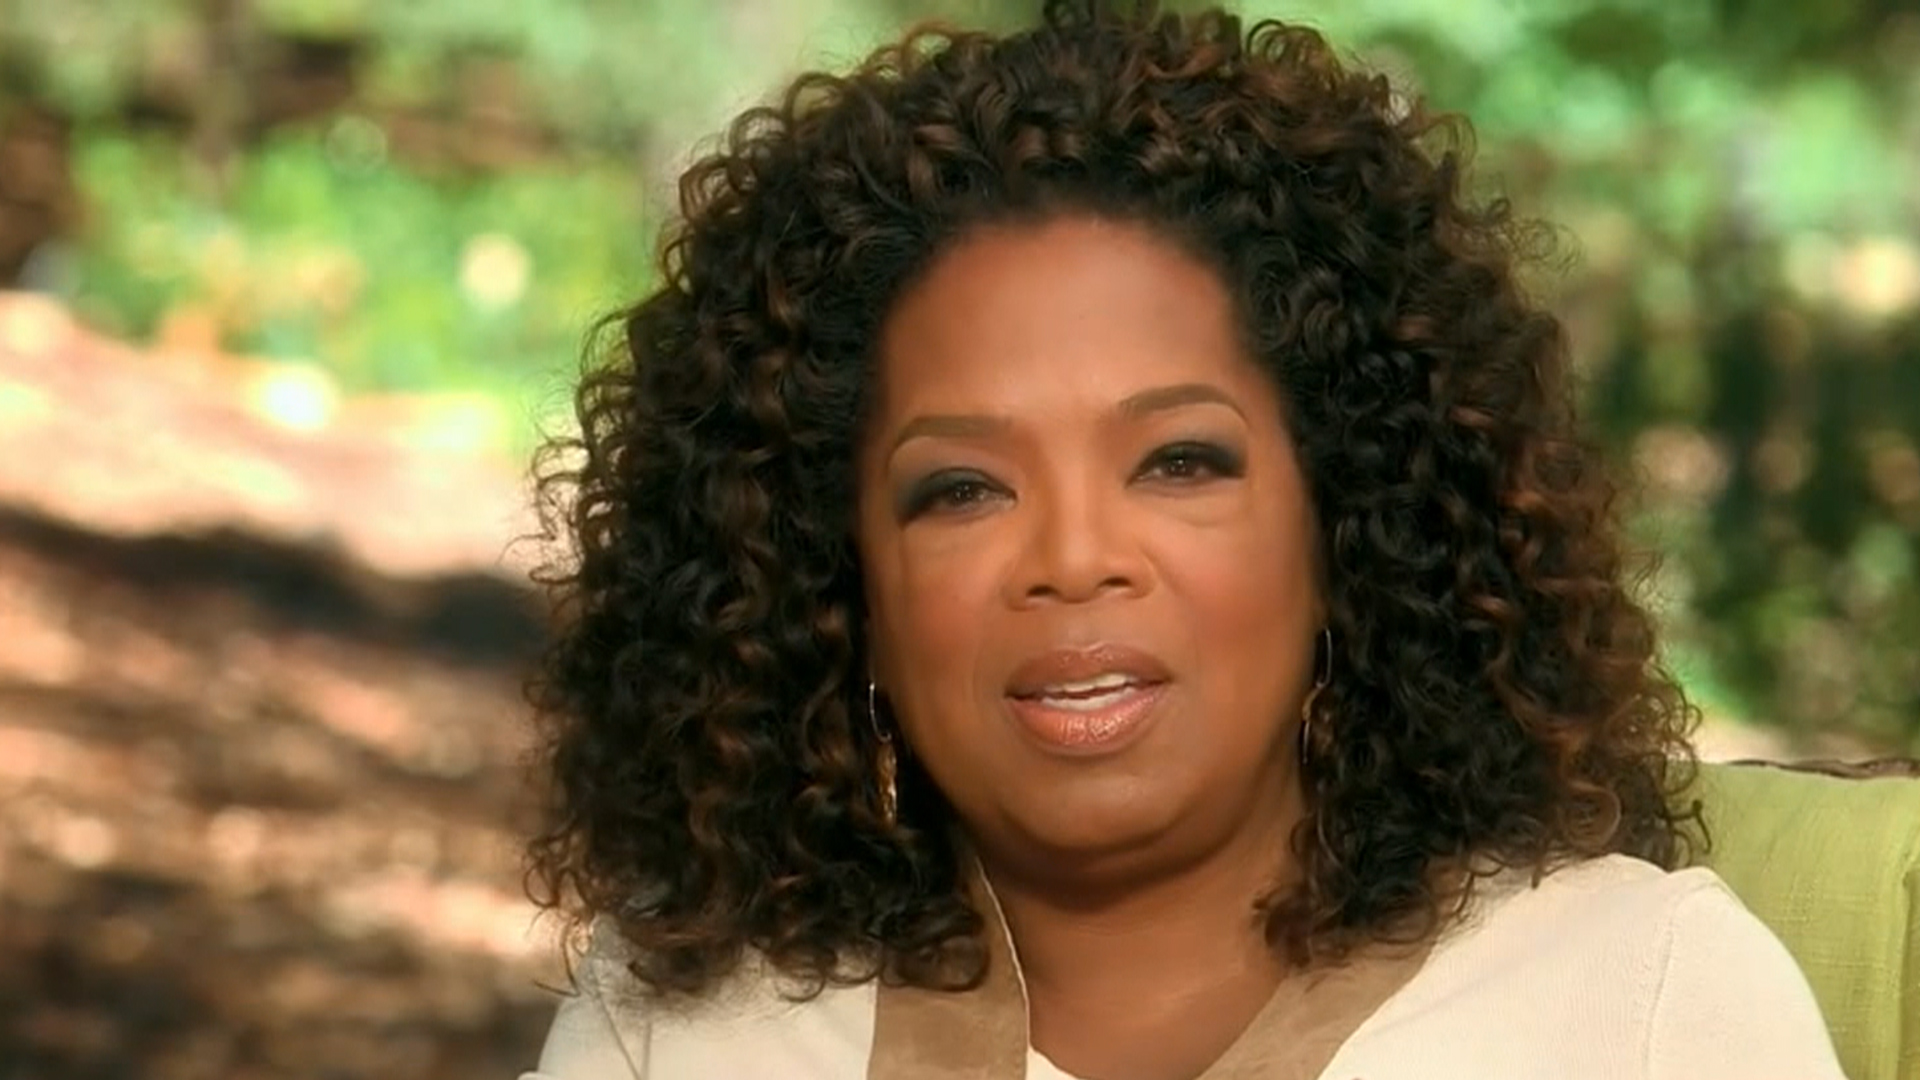 Oprah Winfrey shares weight struggles in new Weight Watchers ad